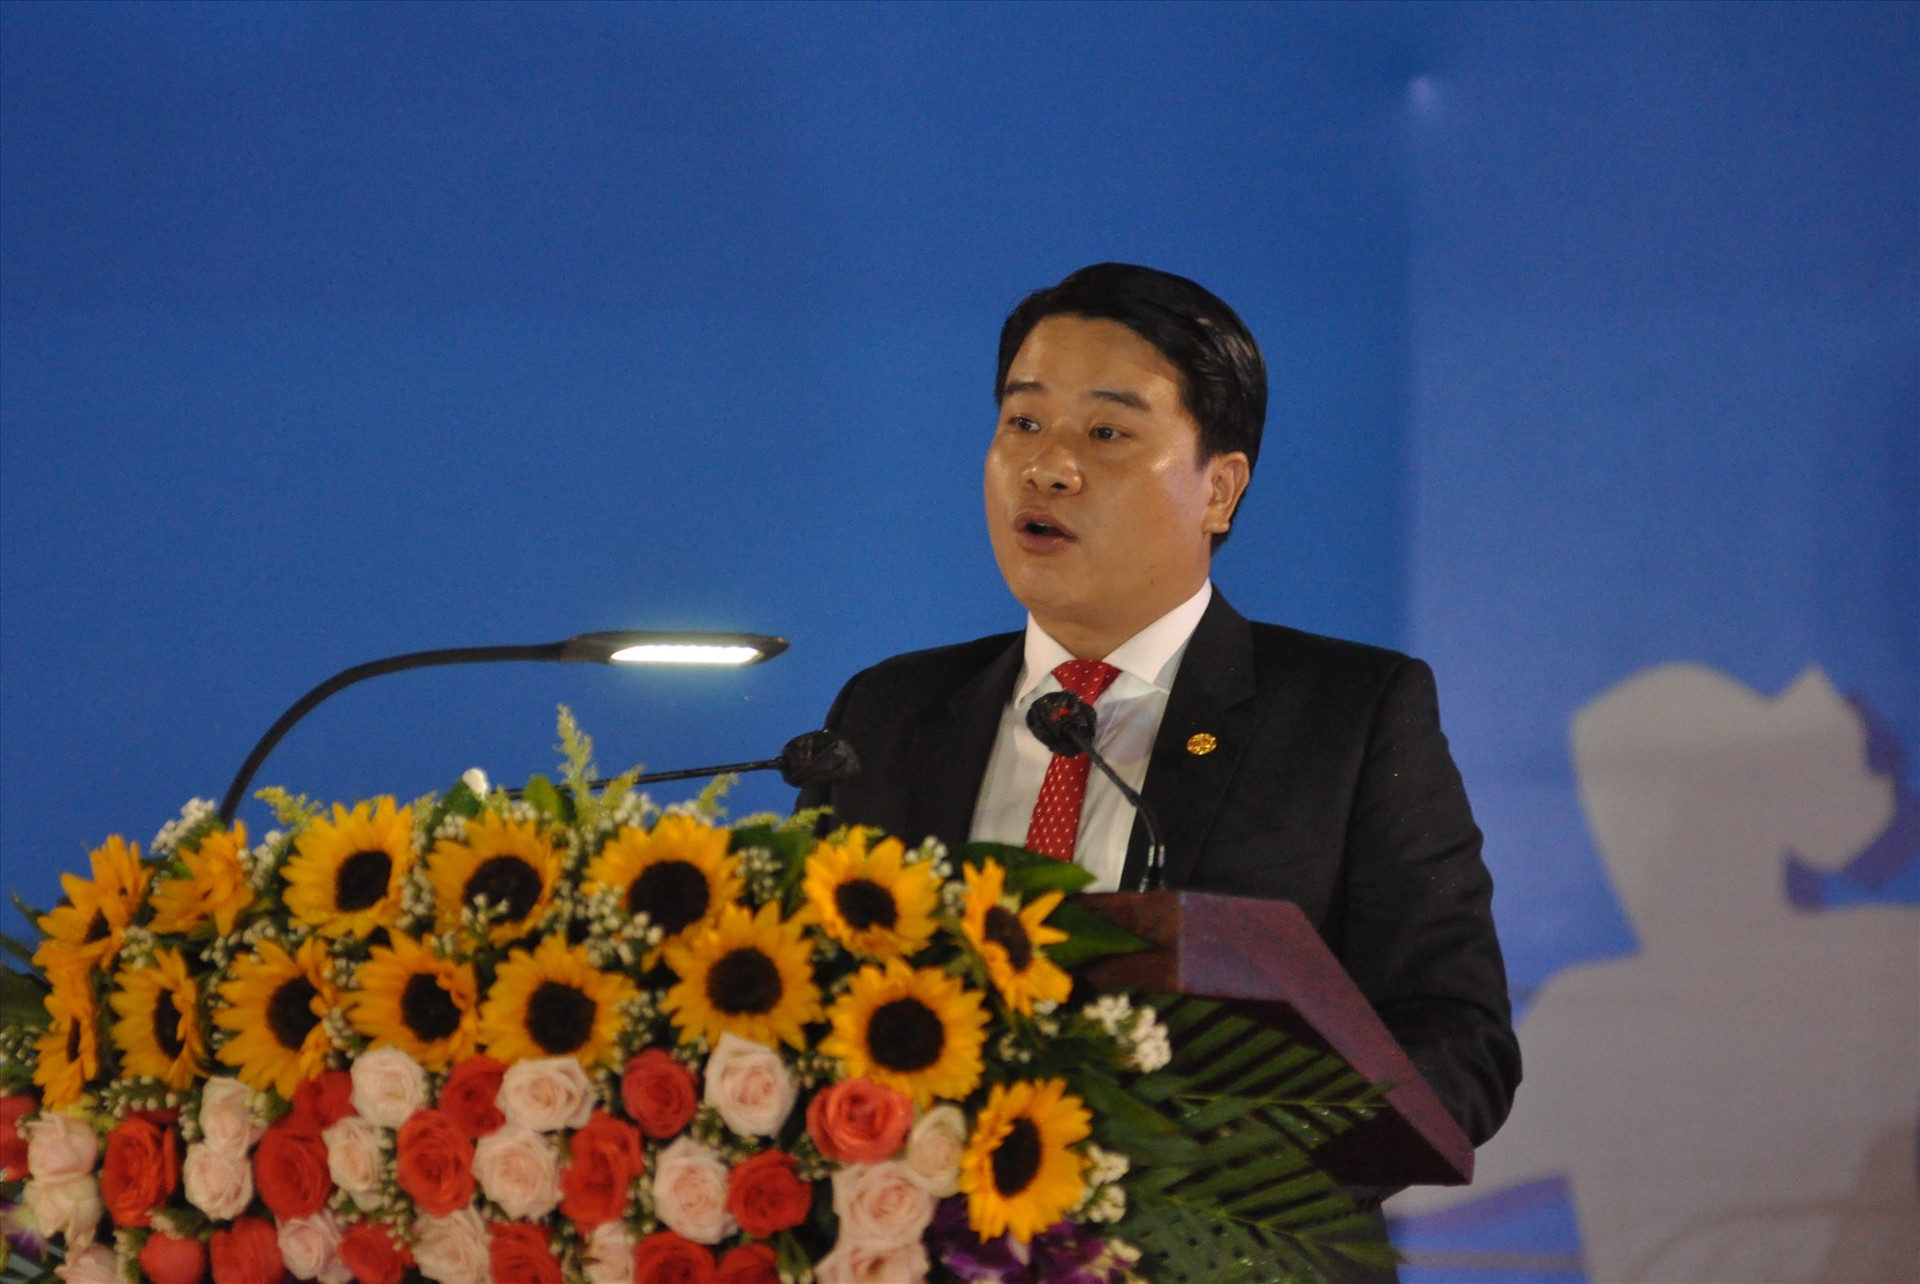 Phó Chủ tịch UBND tỉnh, Trưởng Ban tổ chức đại hội Trần Văn Tân phát biểu lễ khai mạc đại hội. Ảnh: T.V